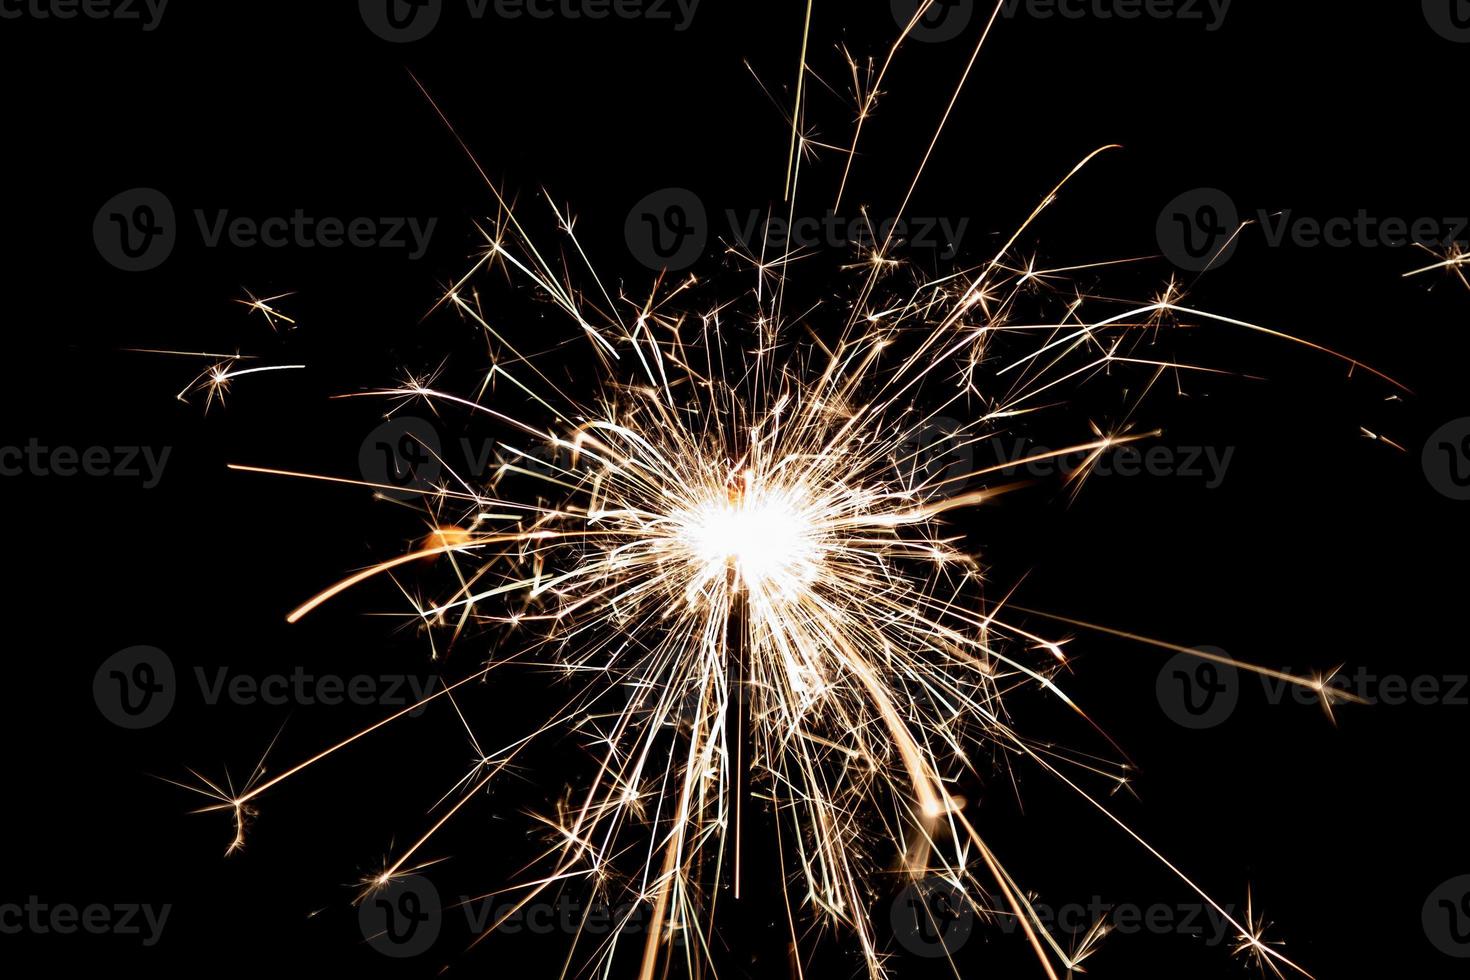 brennende Wunderkerze auf schwarzem Hintergrund isoliert. Thema Feuerwerk. Lichteffekt und Textur. foto